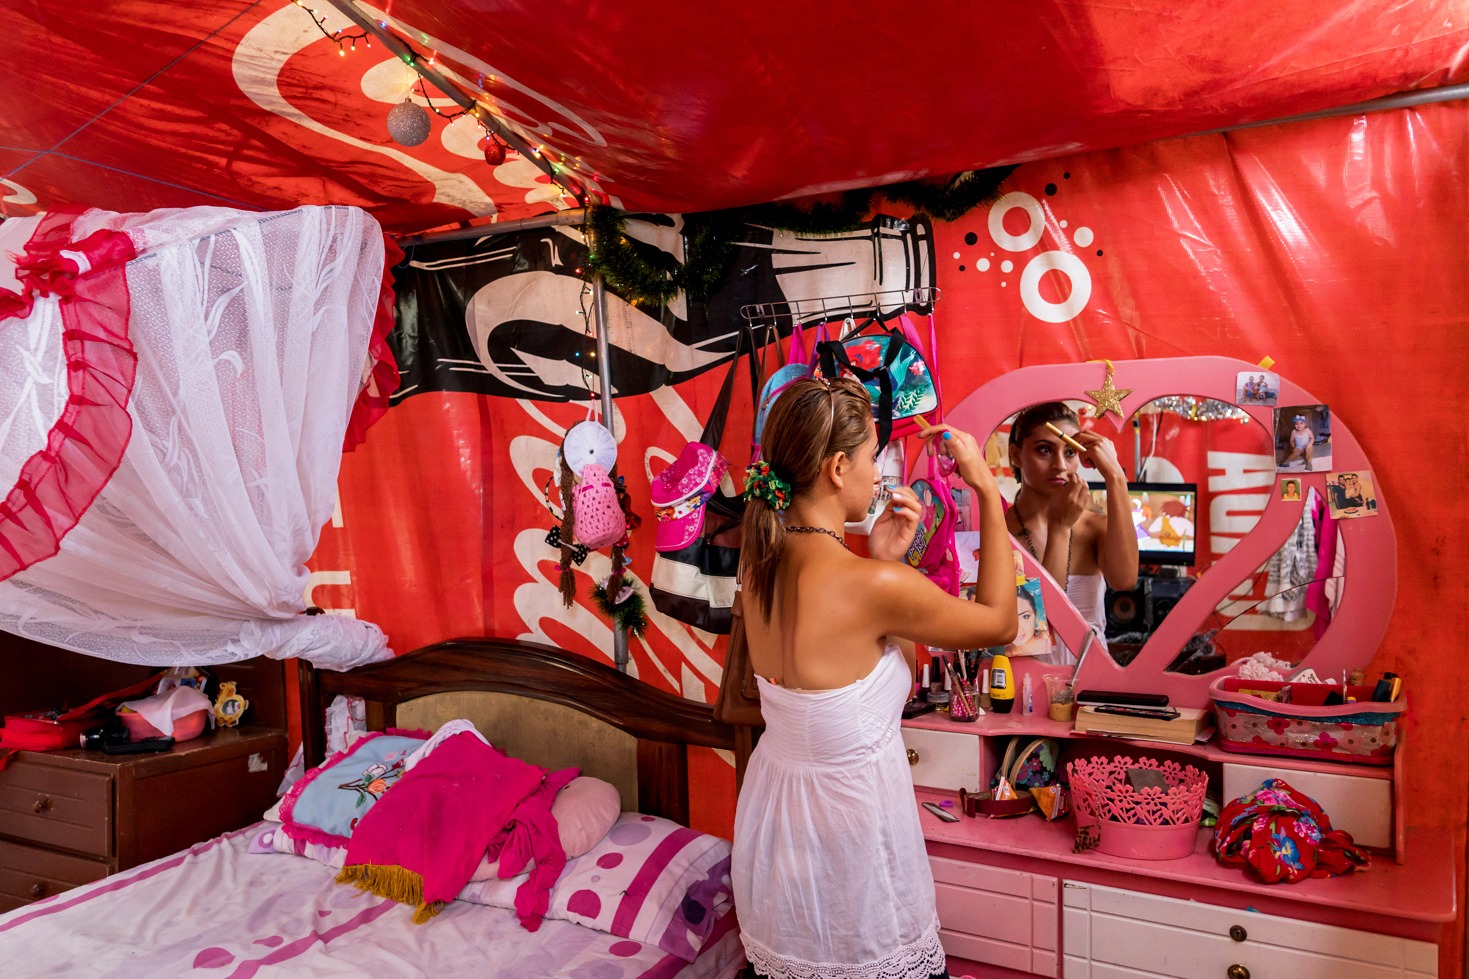 Josselin Magali Cox perdió su casa en el terremoto de abril del 2016. Desde entonces, ella y su familia viven en carpas donadas, hechas con lonas publicitarias en La Chorrera, Manabí.